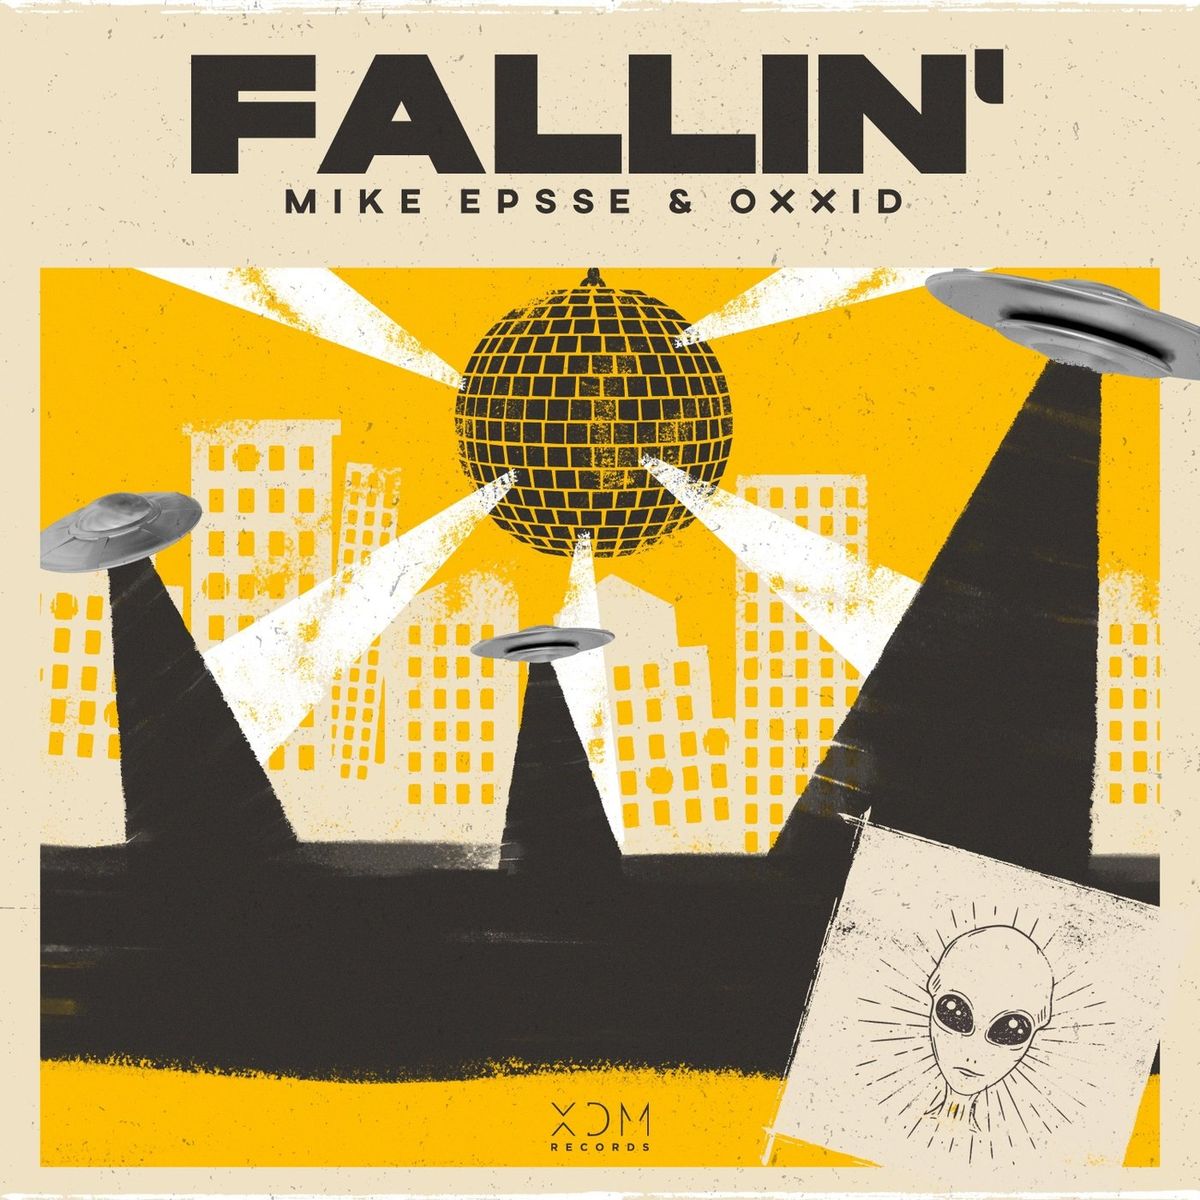 Mike Epsse & Oxxid - Fallin'